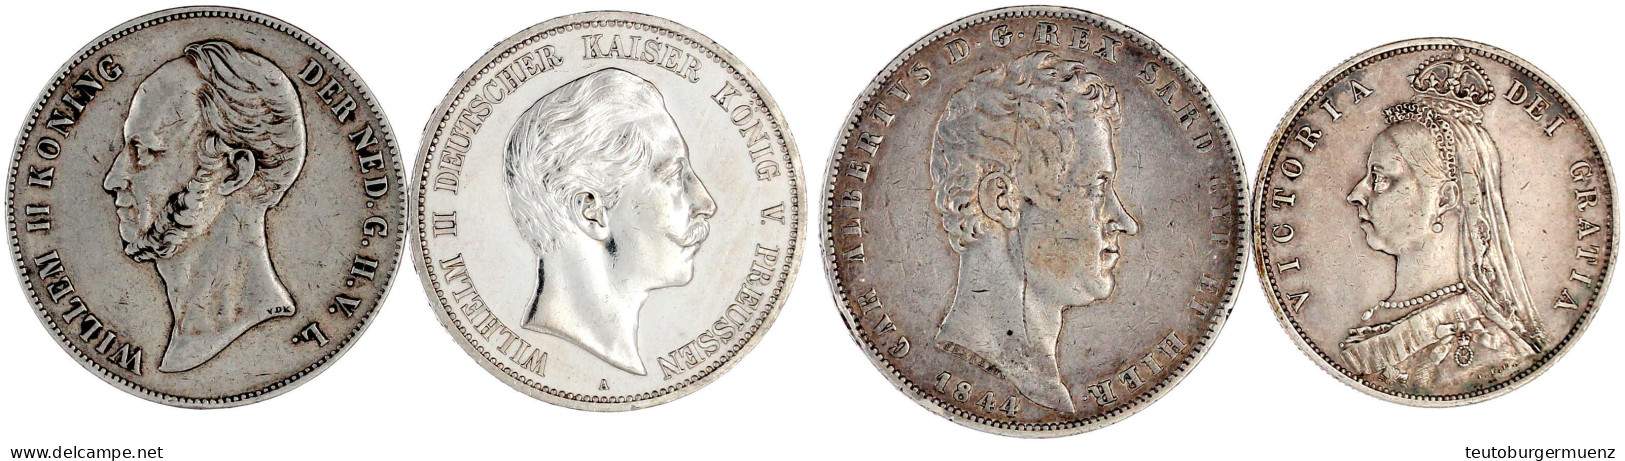 4 Silbermünzen: Preussen 5 Mark 1908 (vz, Berieben), Niederlande 2 1/2 Gulden 1847, Italien Sardinien 5 Lire 1844, Großb - Autres – Europe